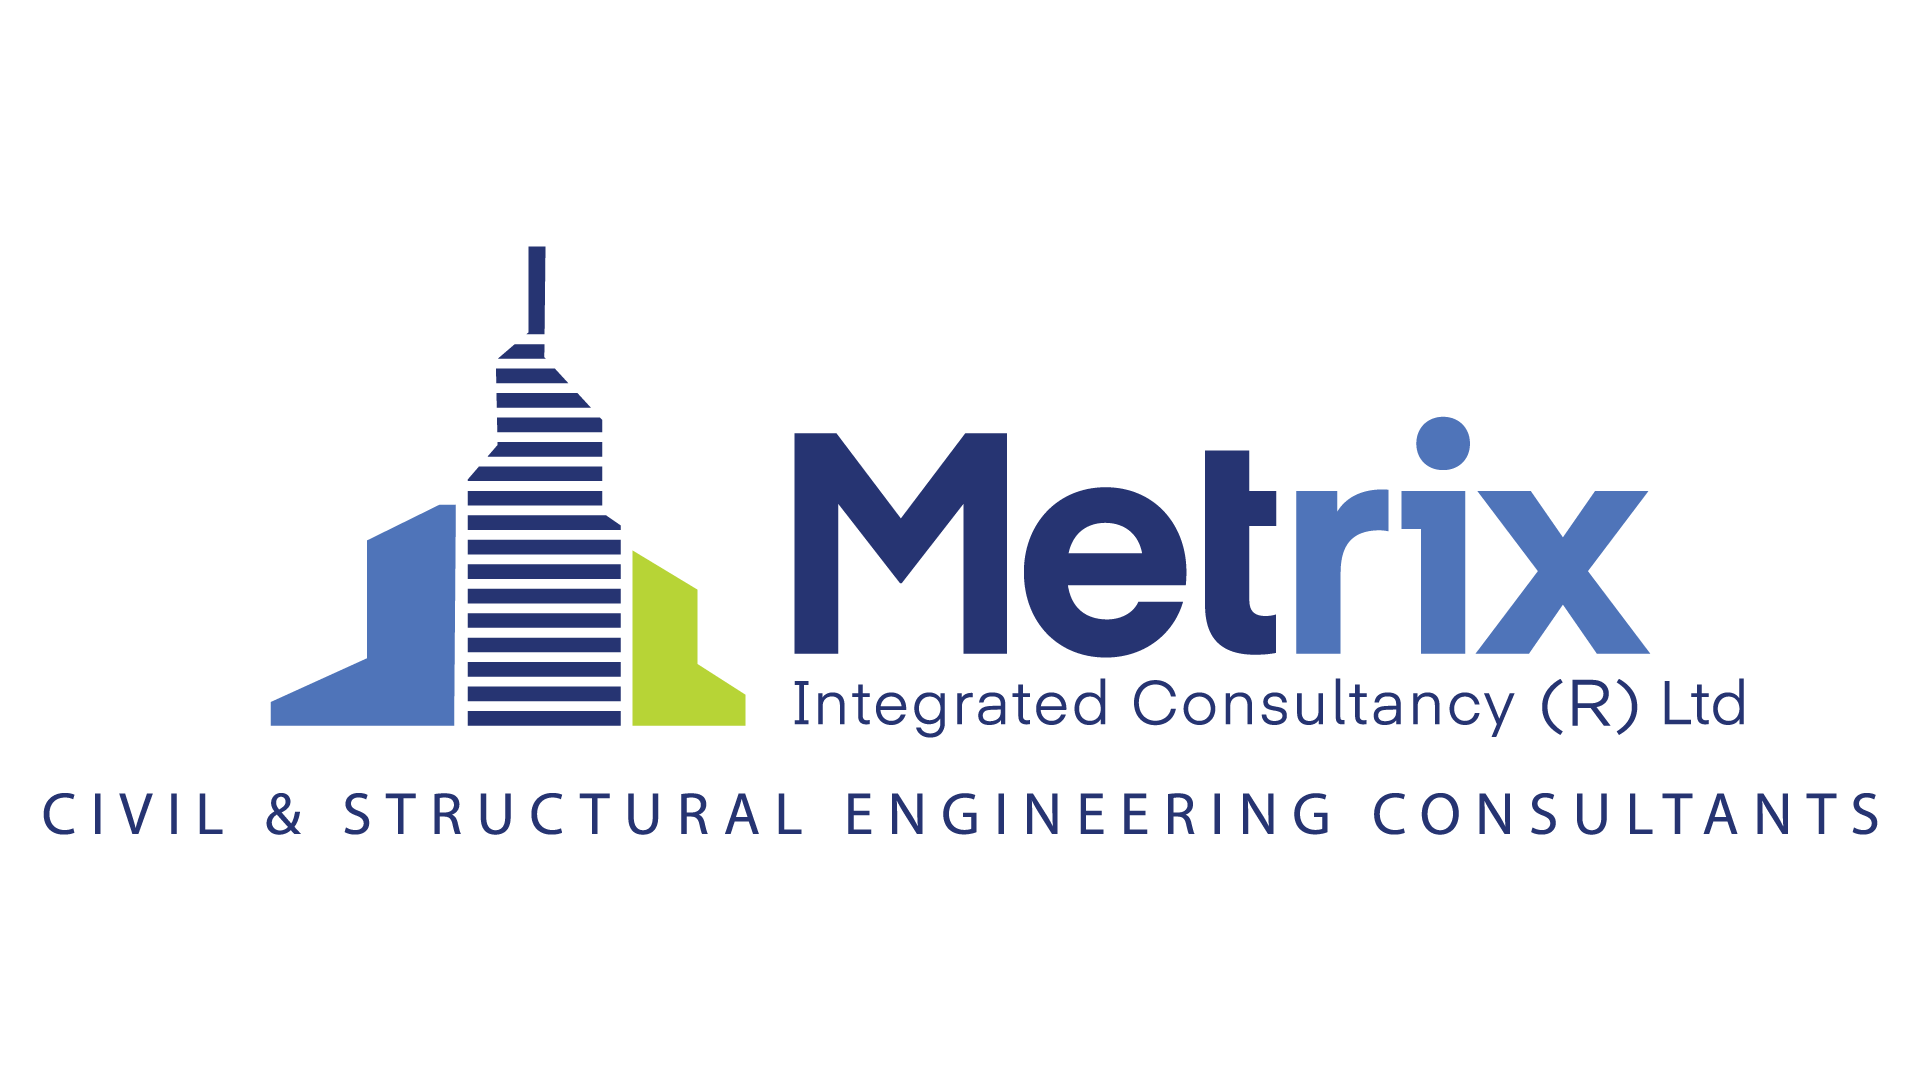 Metrix Integrated Consultancy